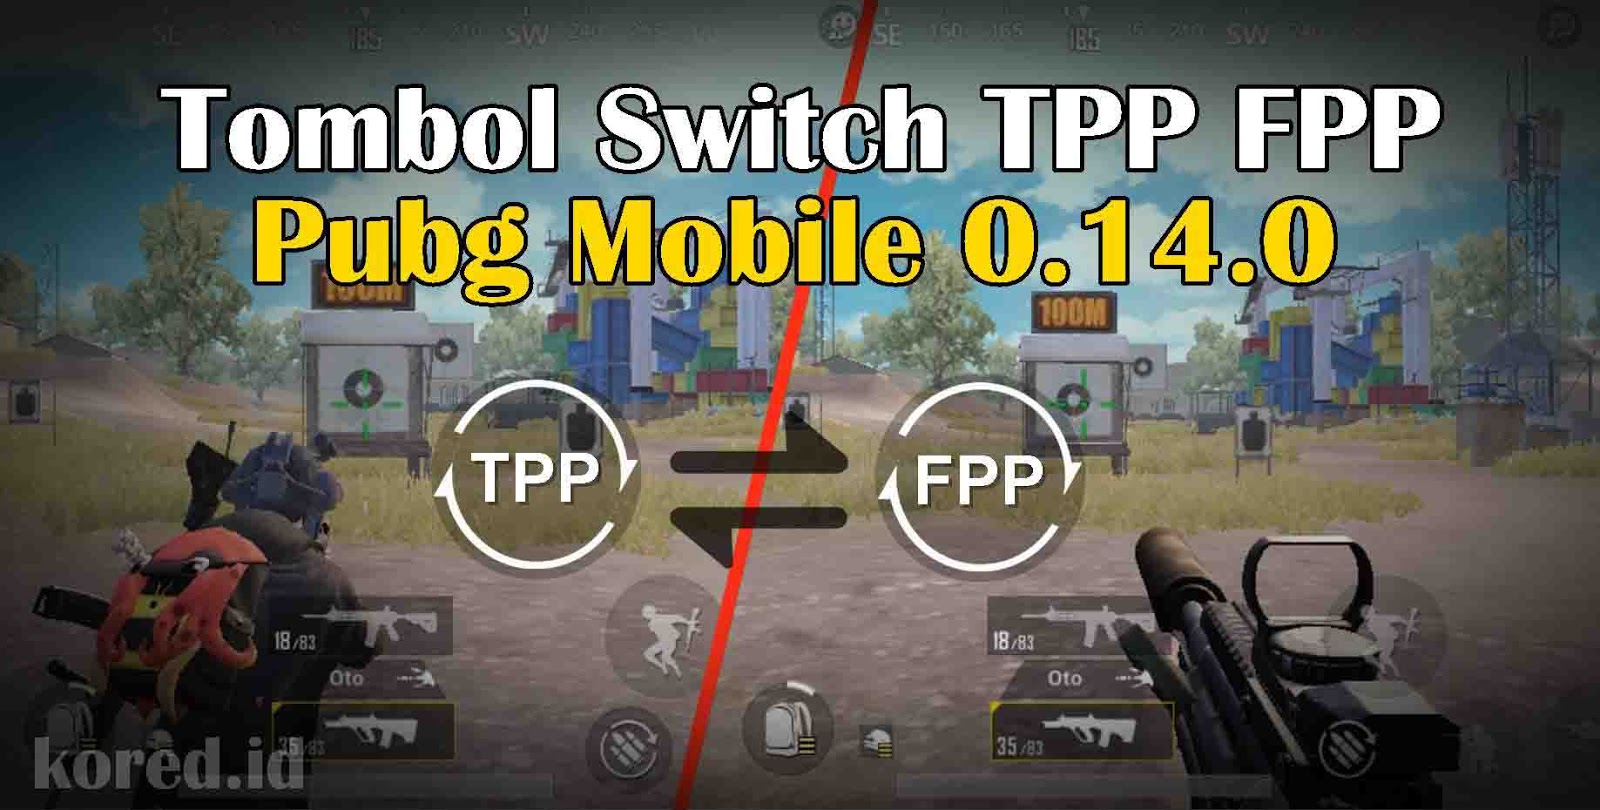 Cara Menambahkan Tombol Switch Tpp Fpp In Game Pubg Mobile 0 14 0 File Active Sav Tpp Fpp Kored Id